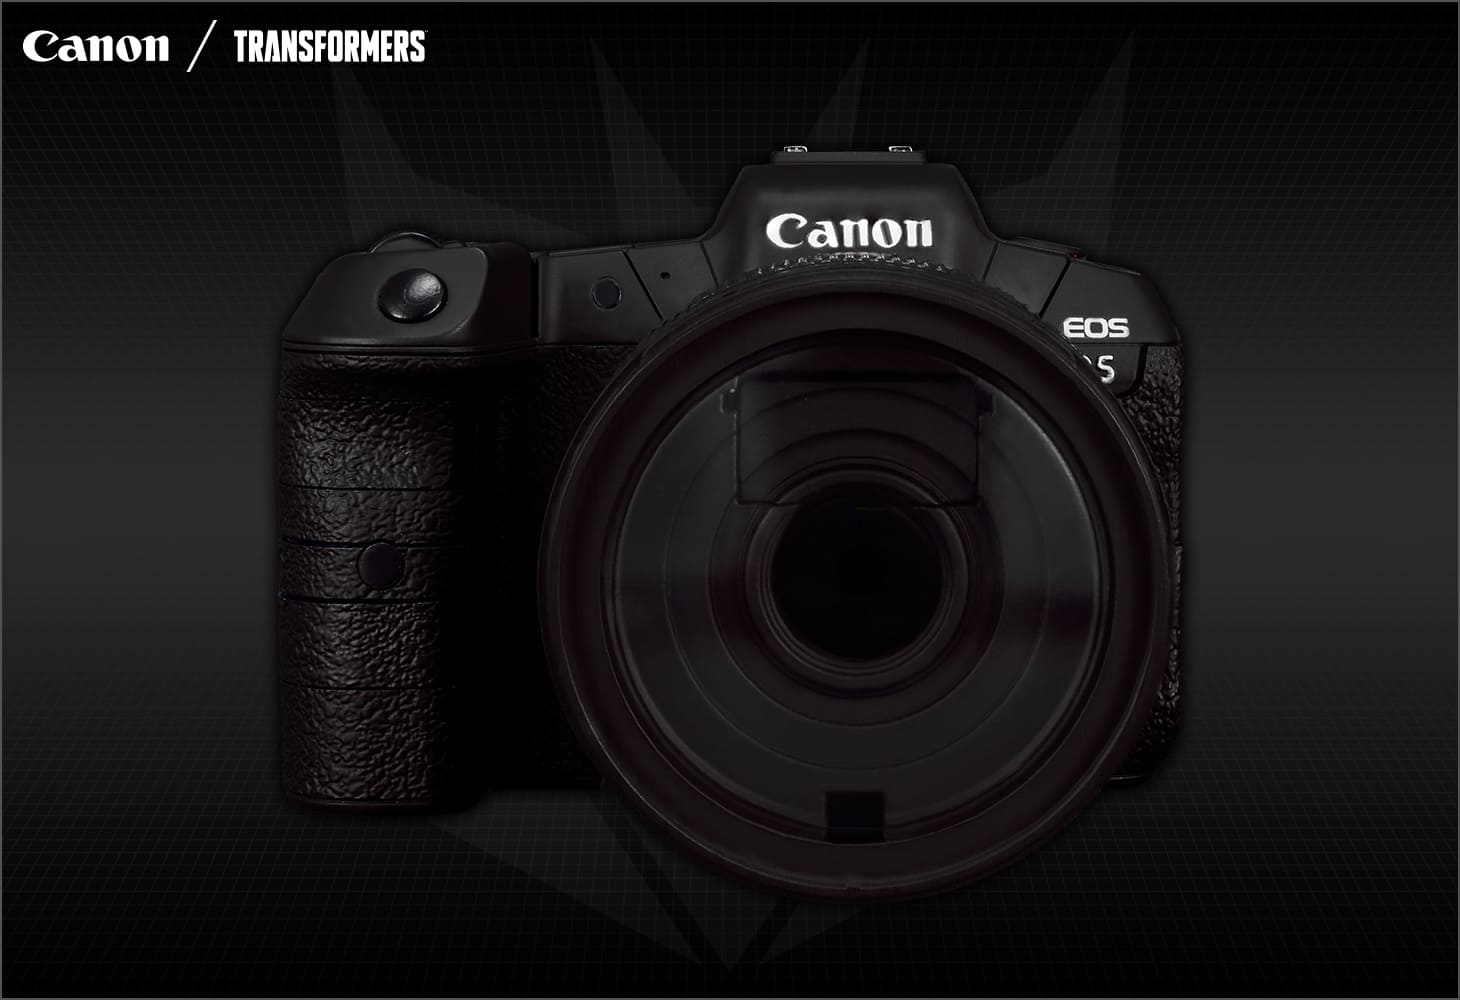 国内：タカラトミーモール限定】Canon/TRANSFORMERS ディセプティコン 